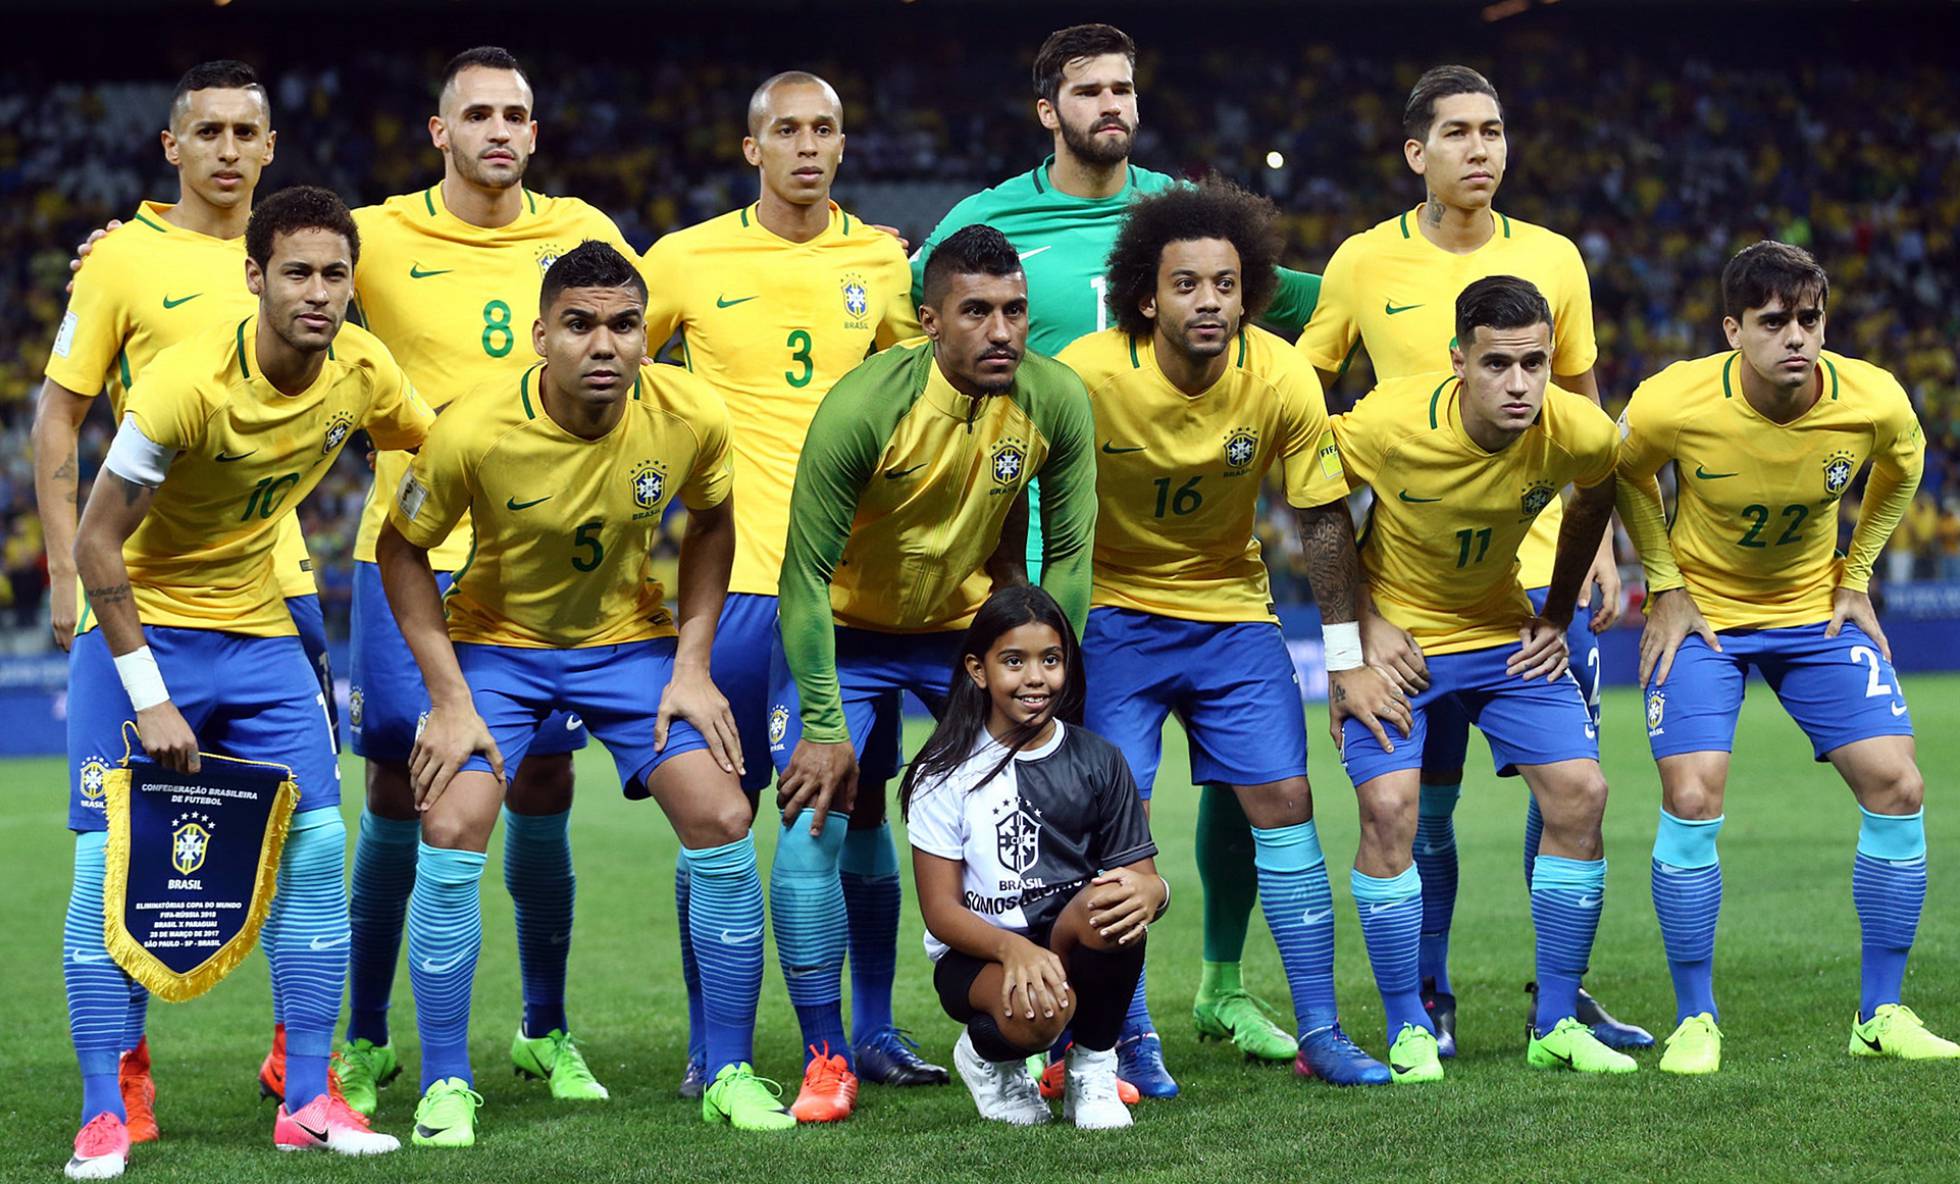 Sau những trận ra quân không thành công của Argentina, Pháp…, Brazil không thể chủ quan dù Selecao được xem là ứng viên sáng giá nhất của danh hiệu vô địch World Cup 2018. Ảnh: Footmercato